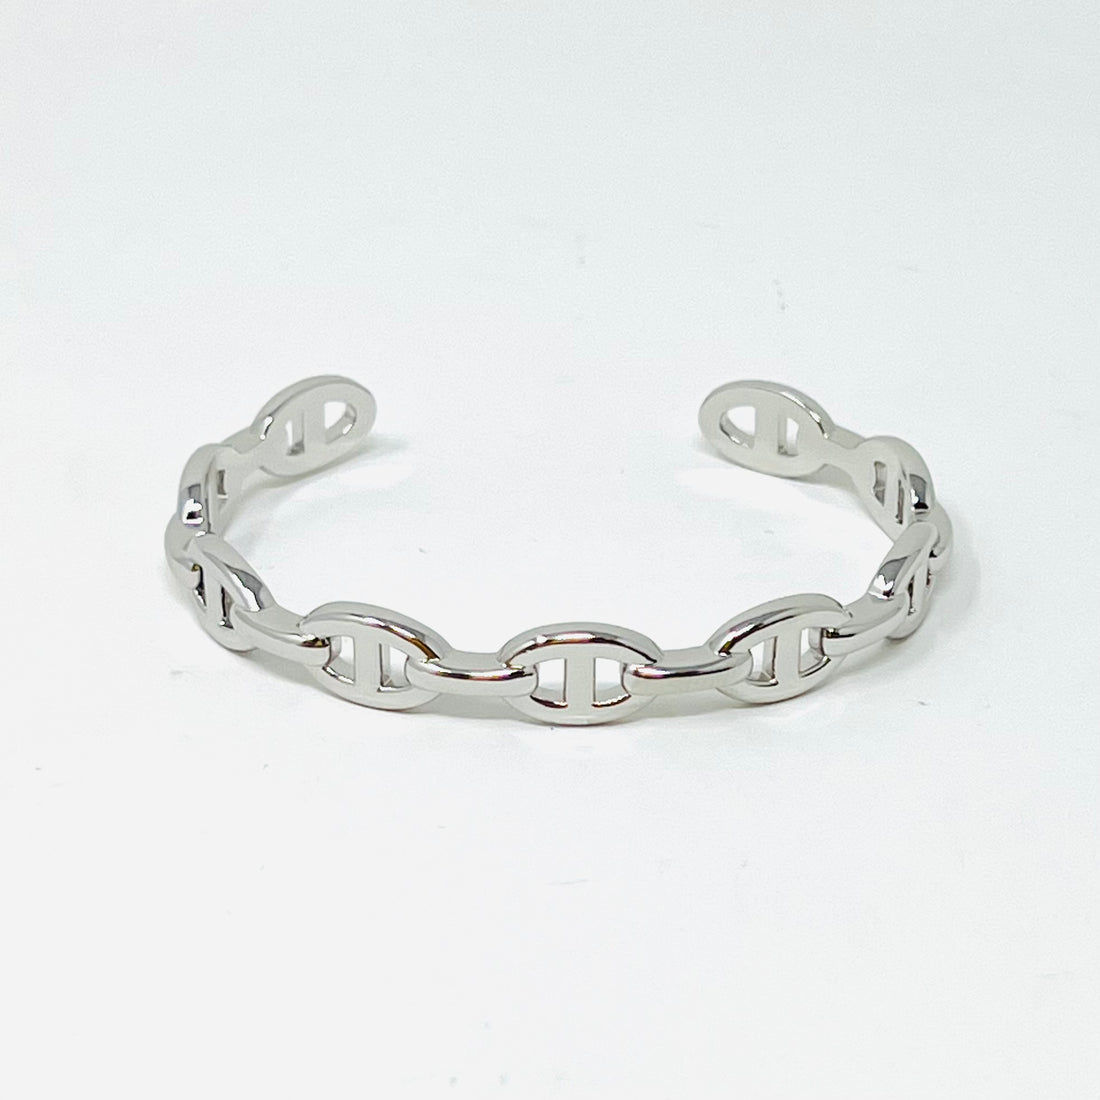 Lynx Bracelet in Silver